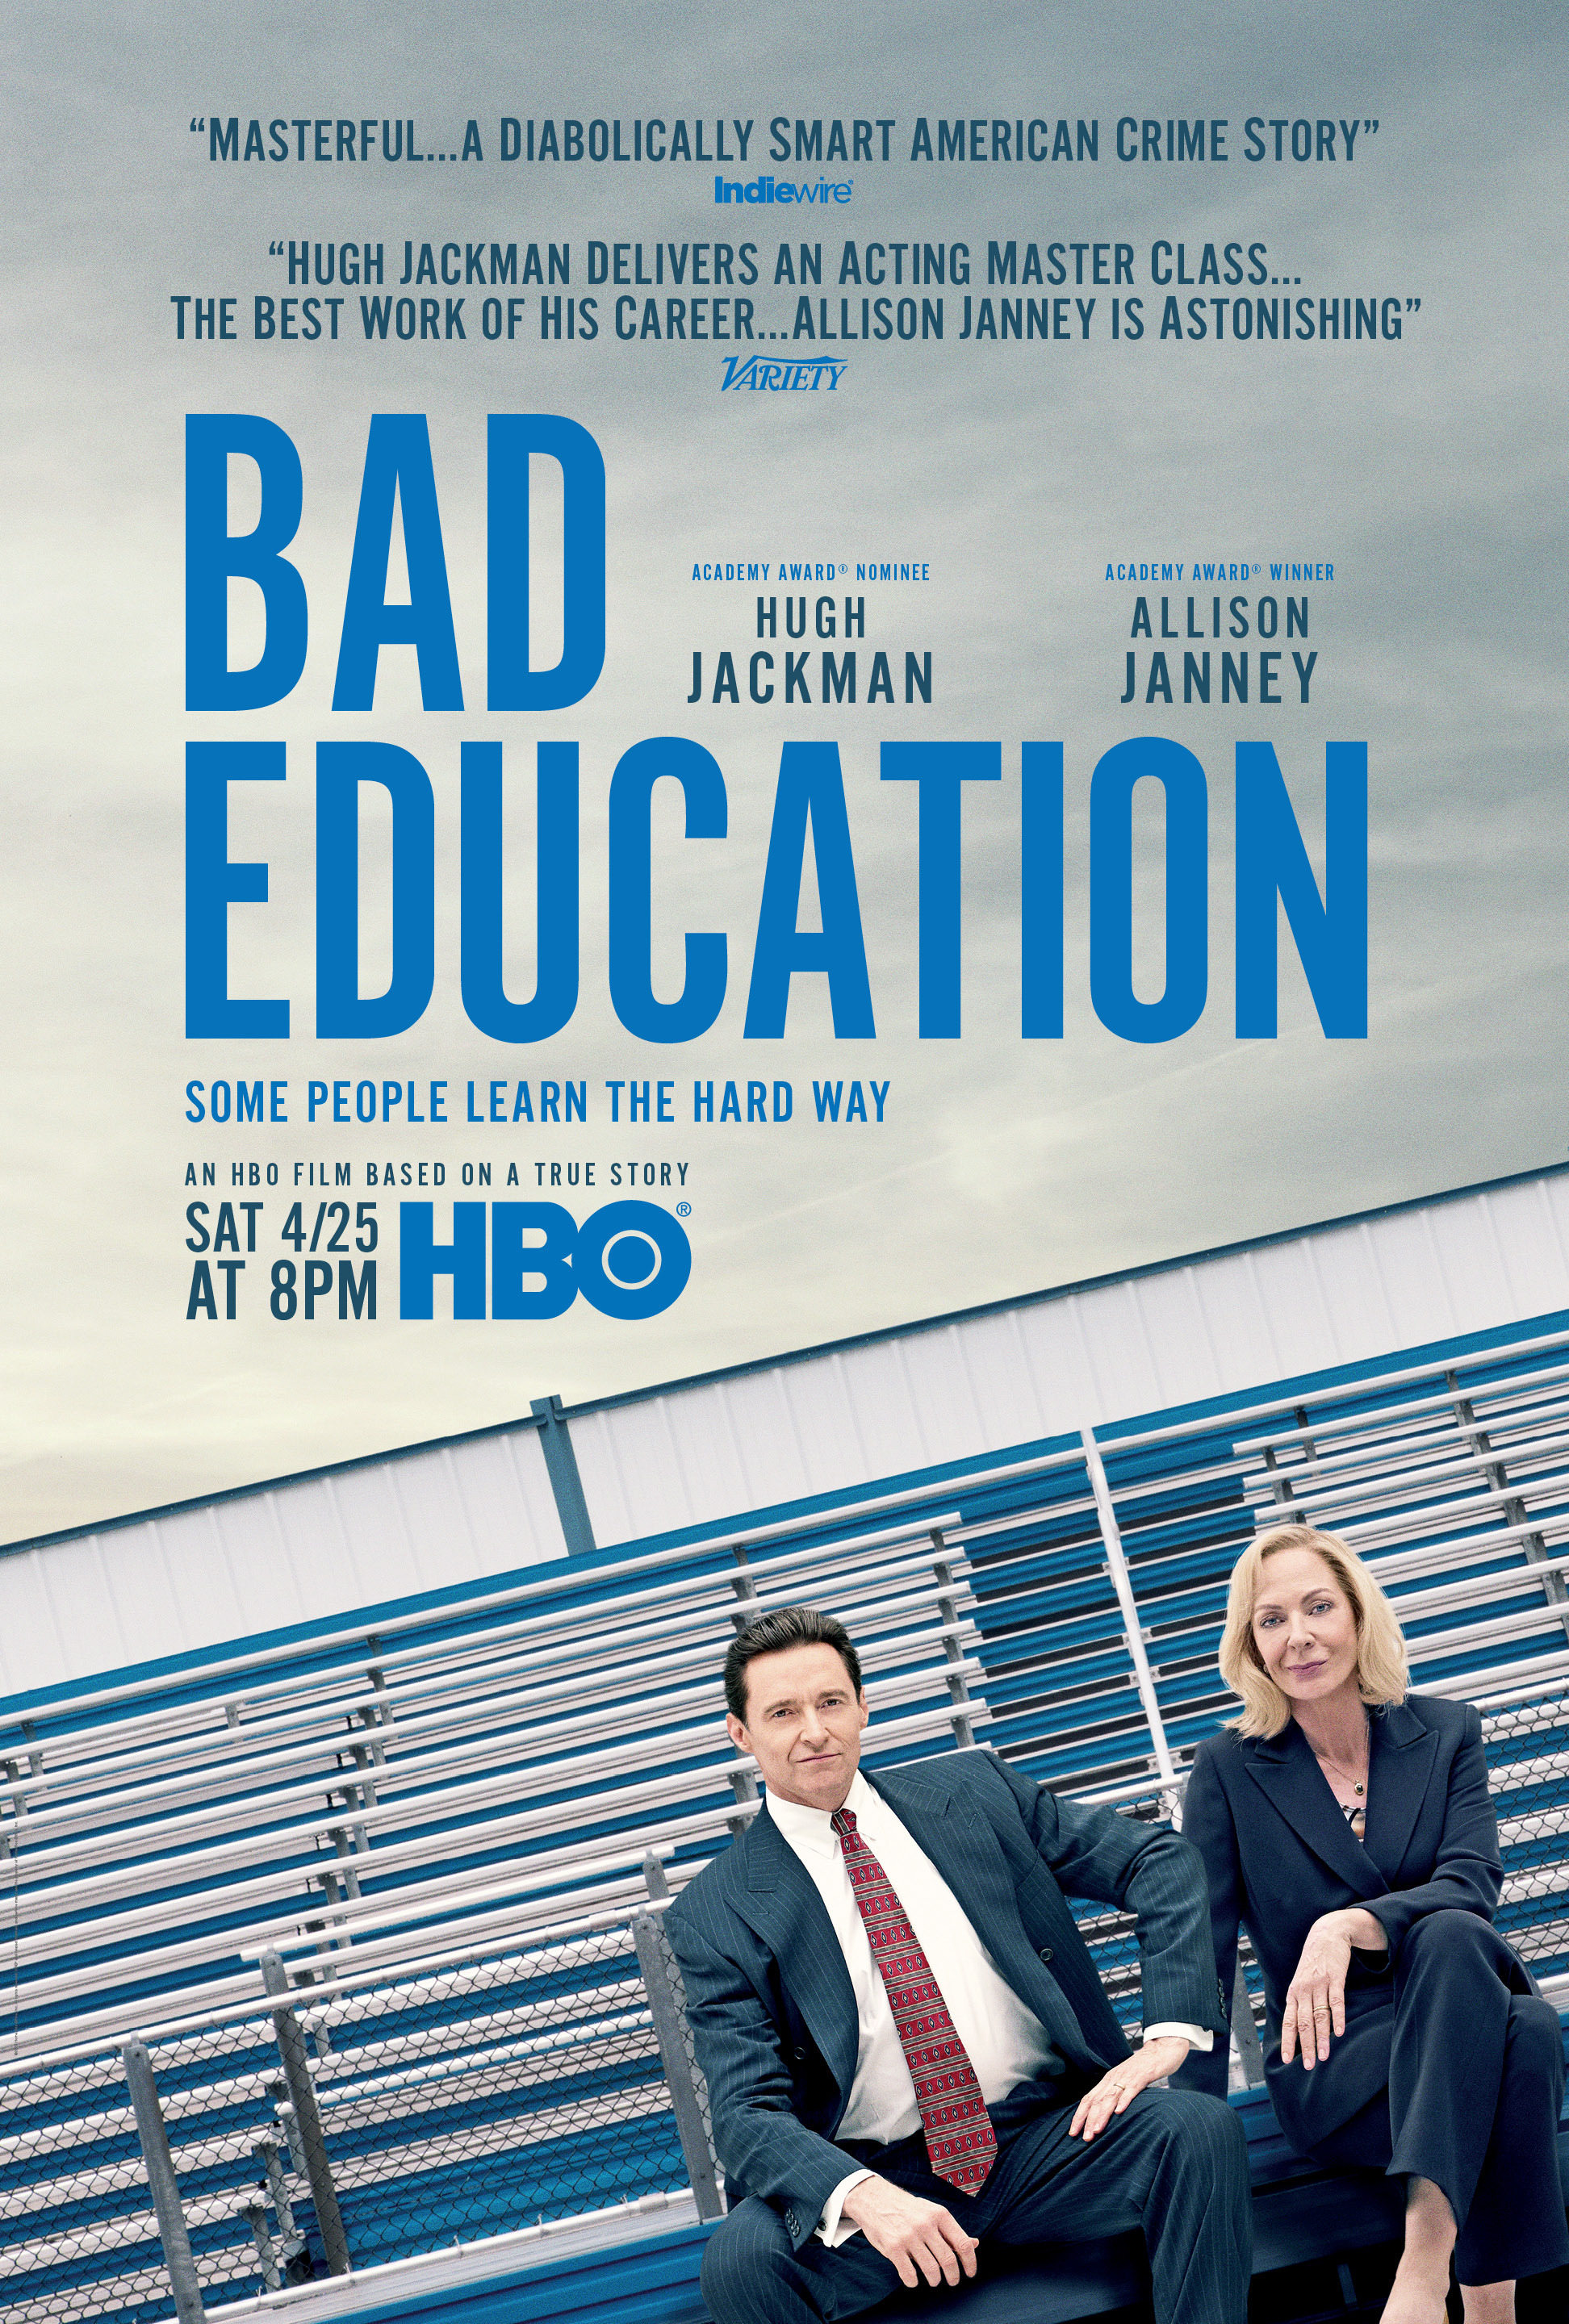 دانلود فیلم Bad Education 2019